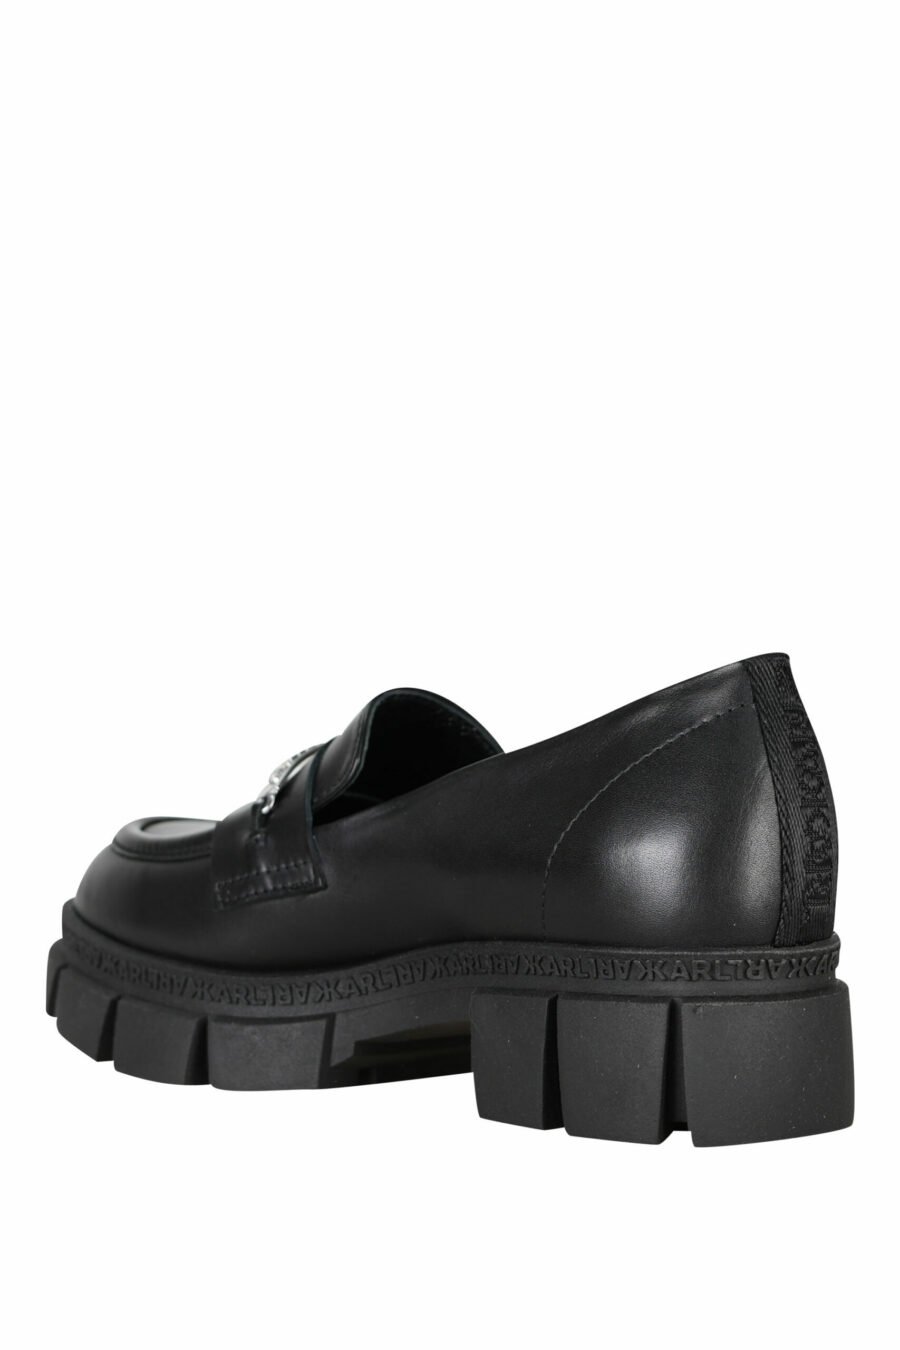 Schwarze Loafer mit Mini-Logo und Plateau - 5059529284977 3 skaliert